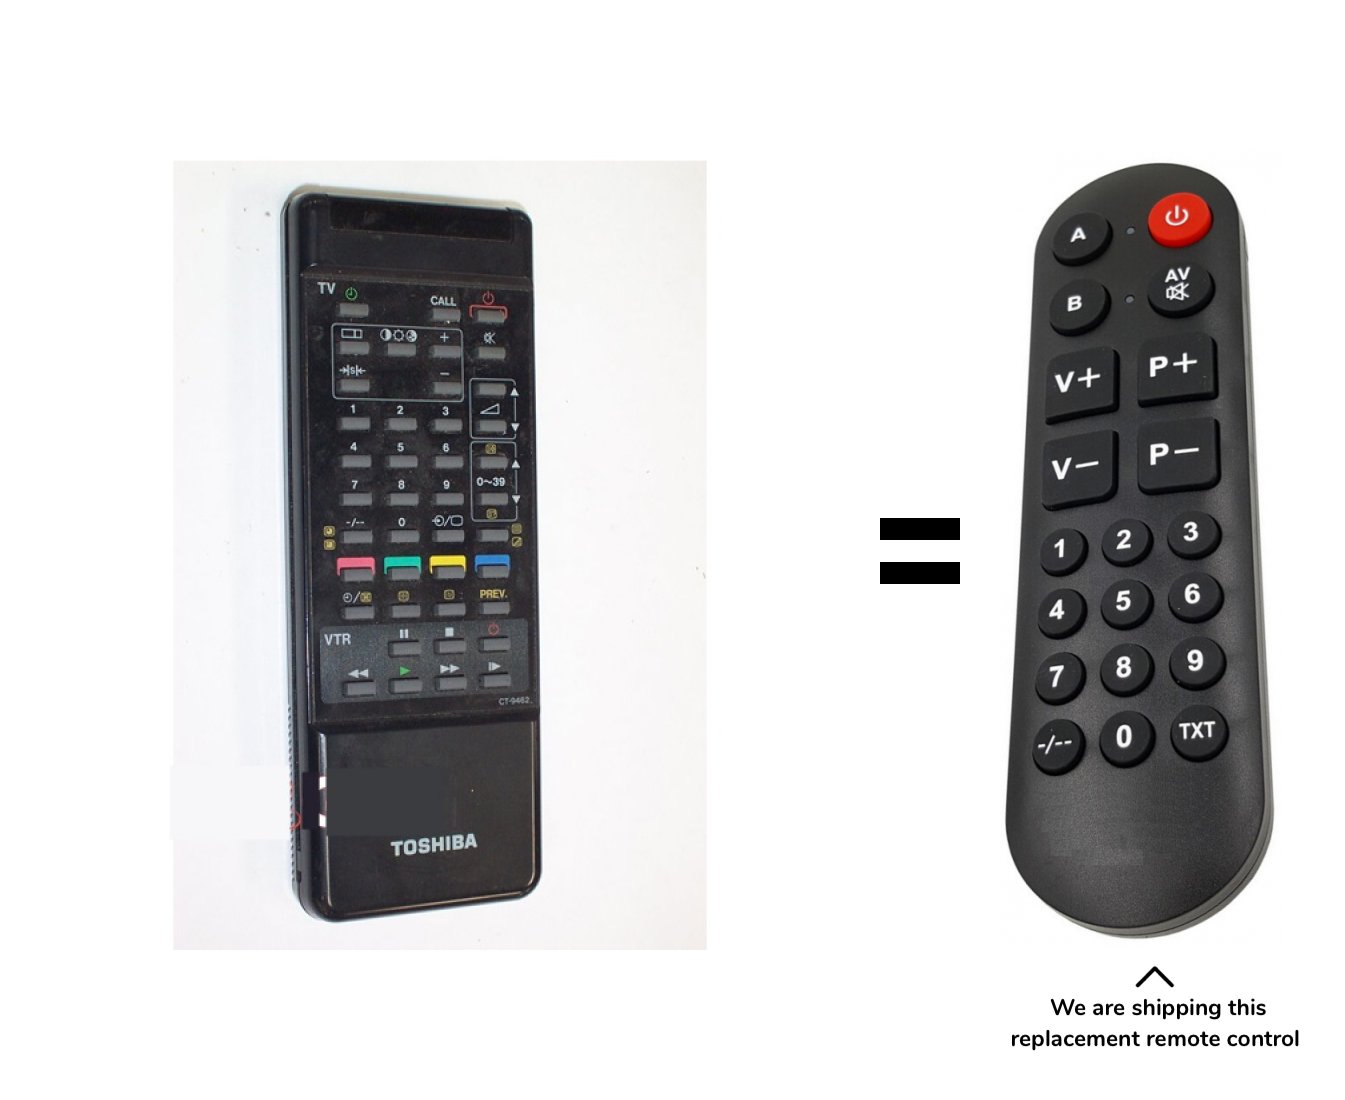 Toshiba TV3357DD remote control for seniors